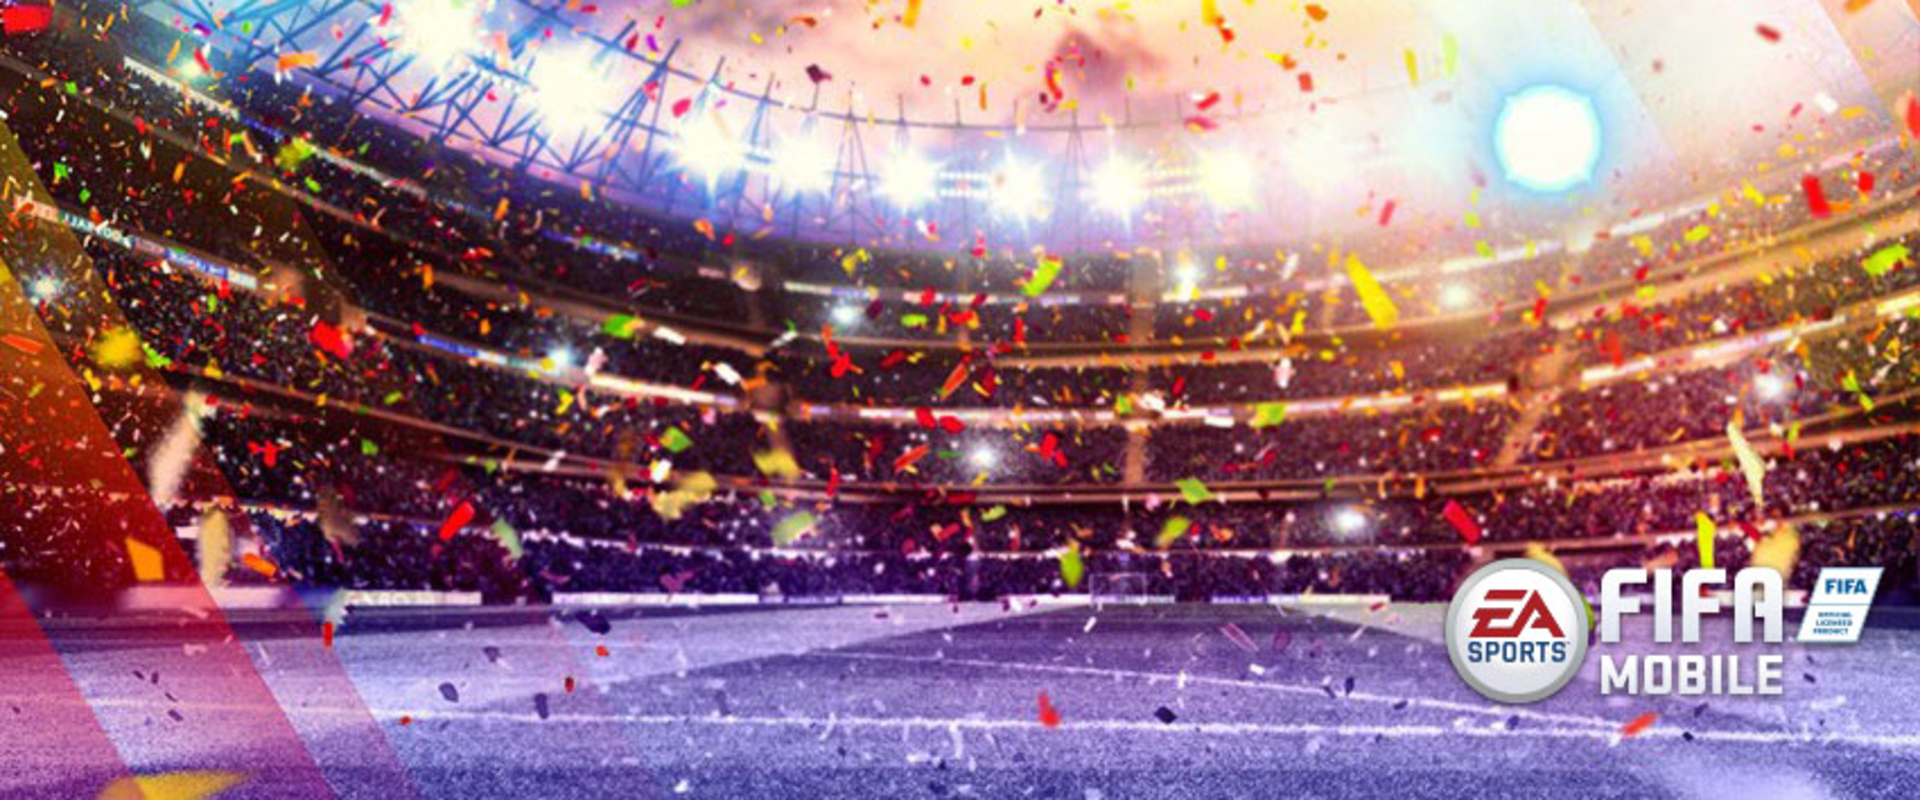 Sok millió érme és játékos szerezhető a FIFA18 Mobil Carniball eseményén!